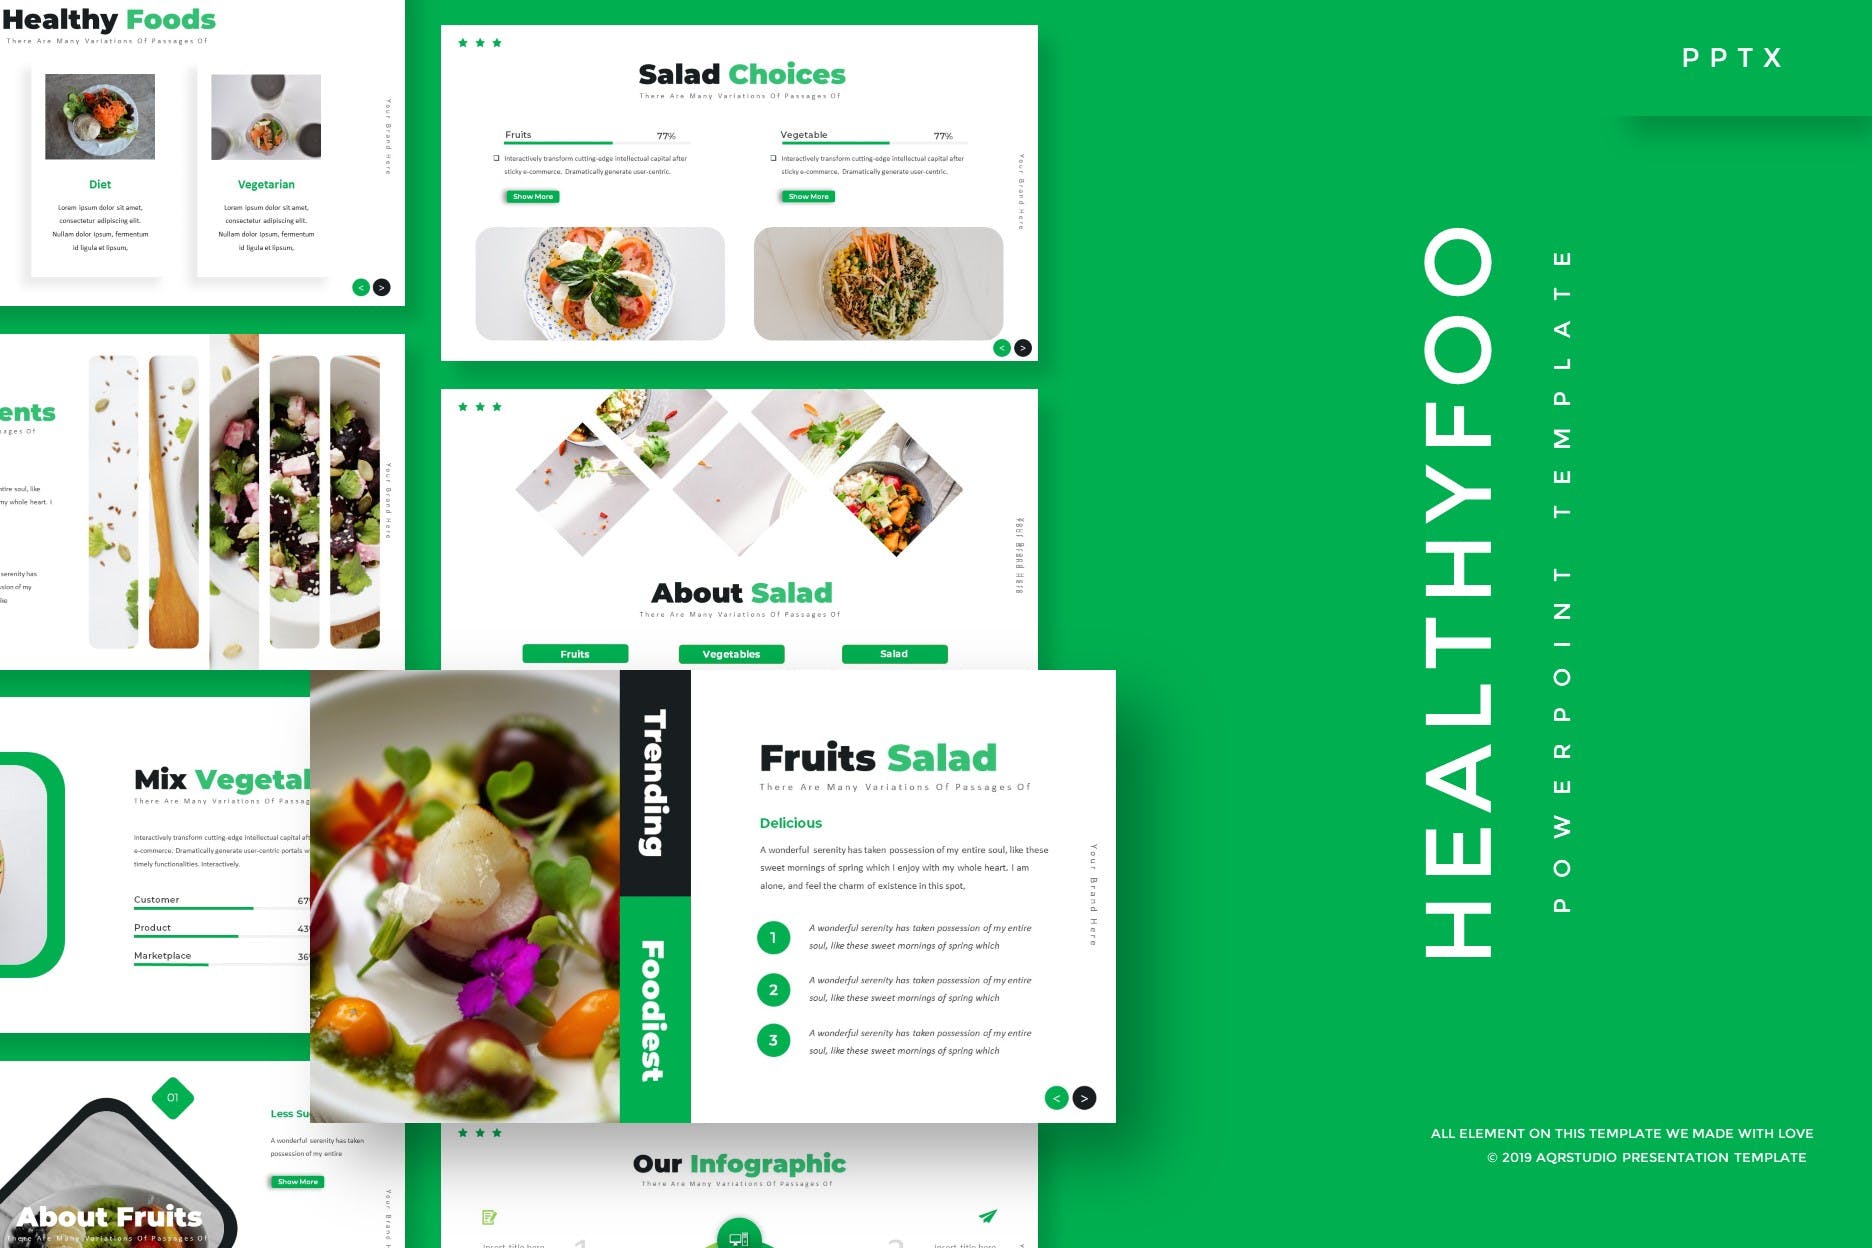 健康饮食主题PPT幻灯片设计模板 Healthyfoo – Powerpoint Template插图